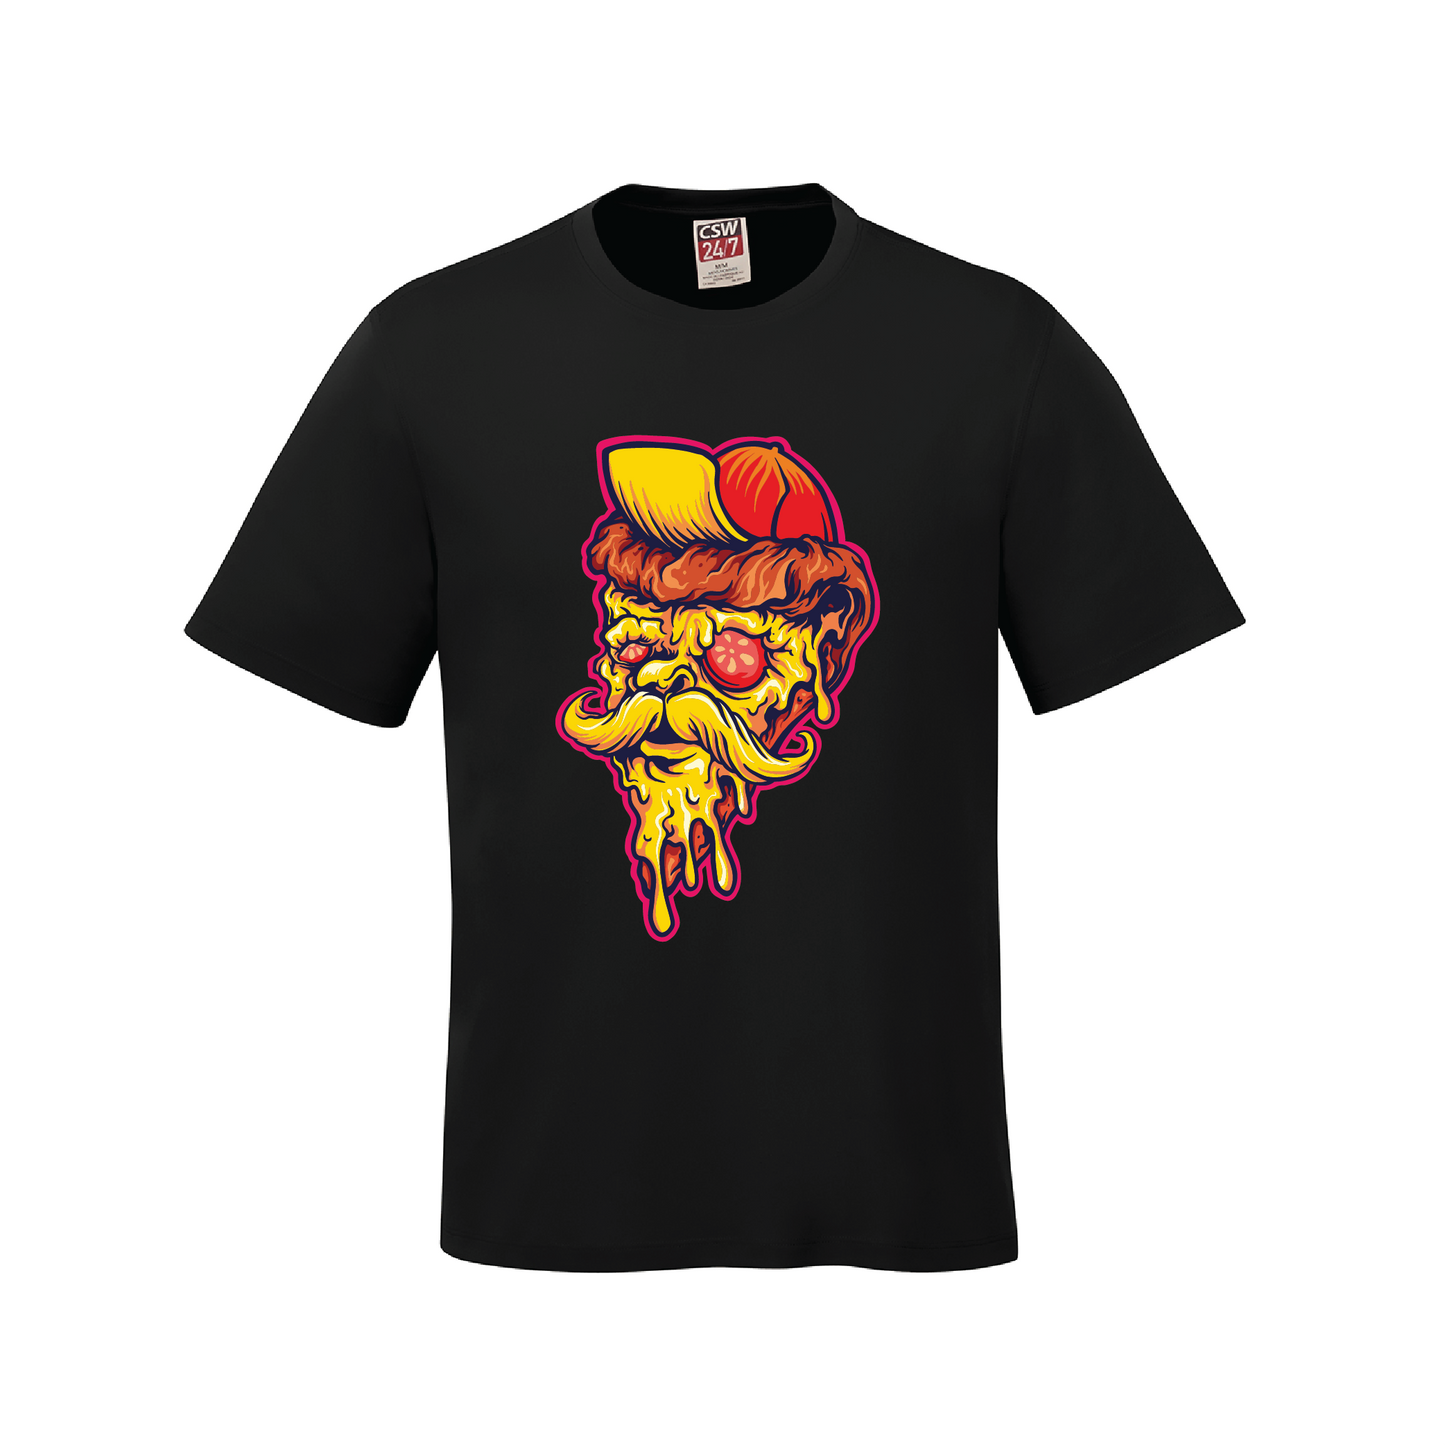 Pizza Face T-Shirt